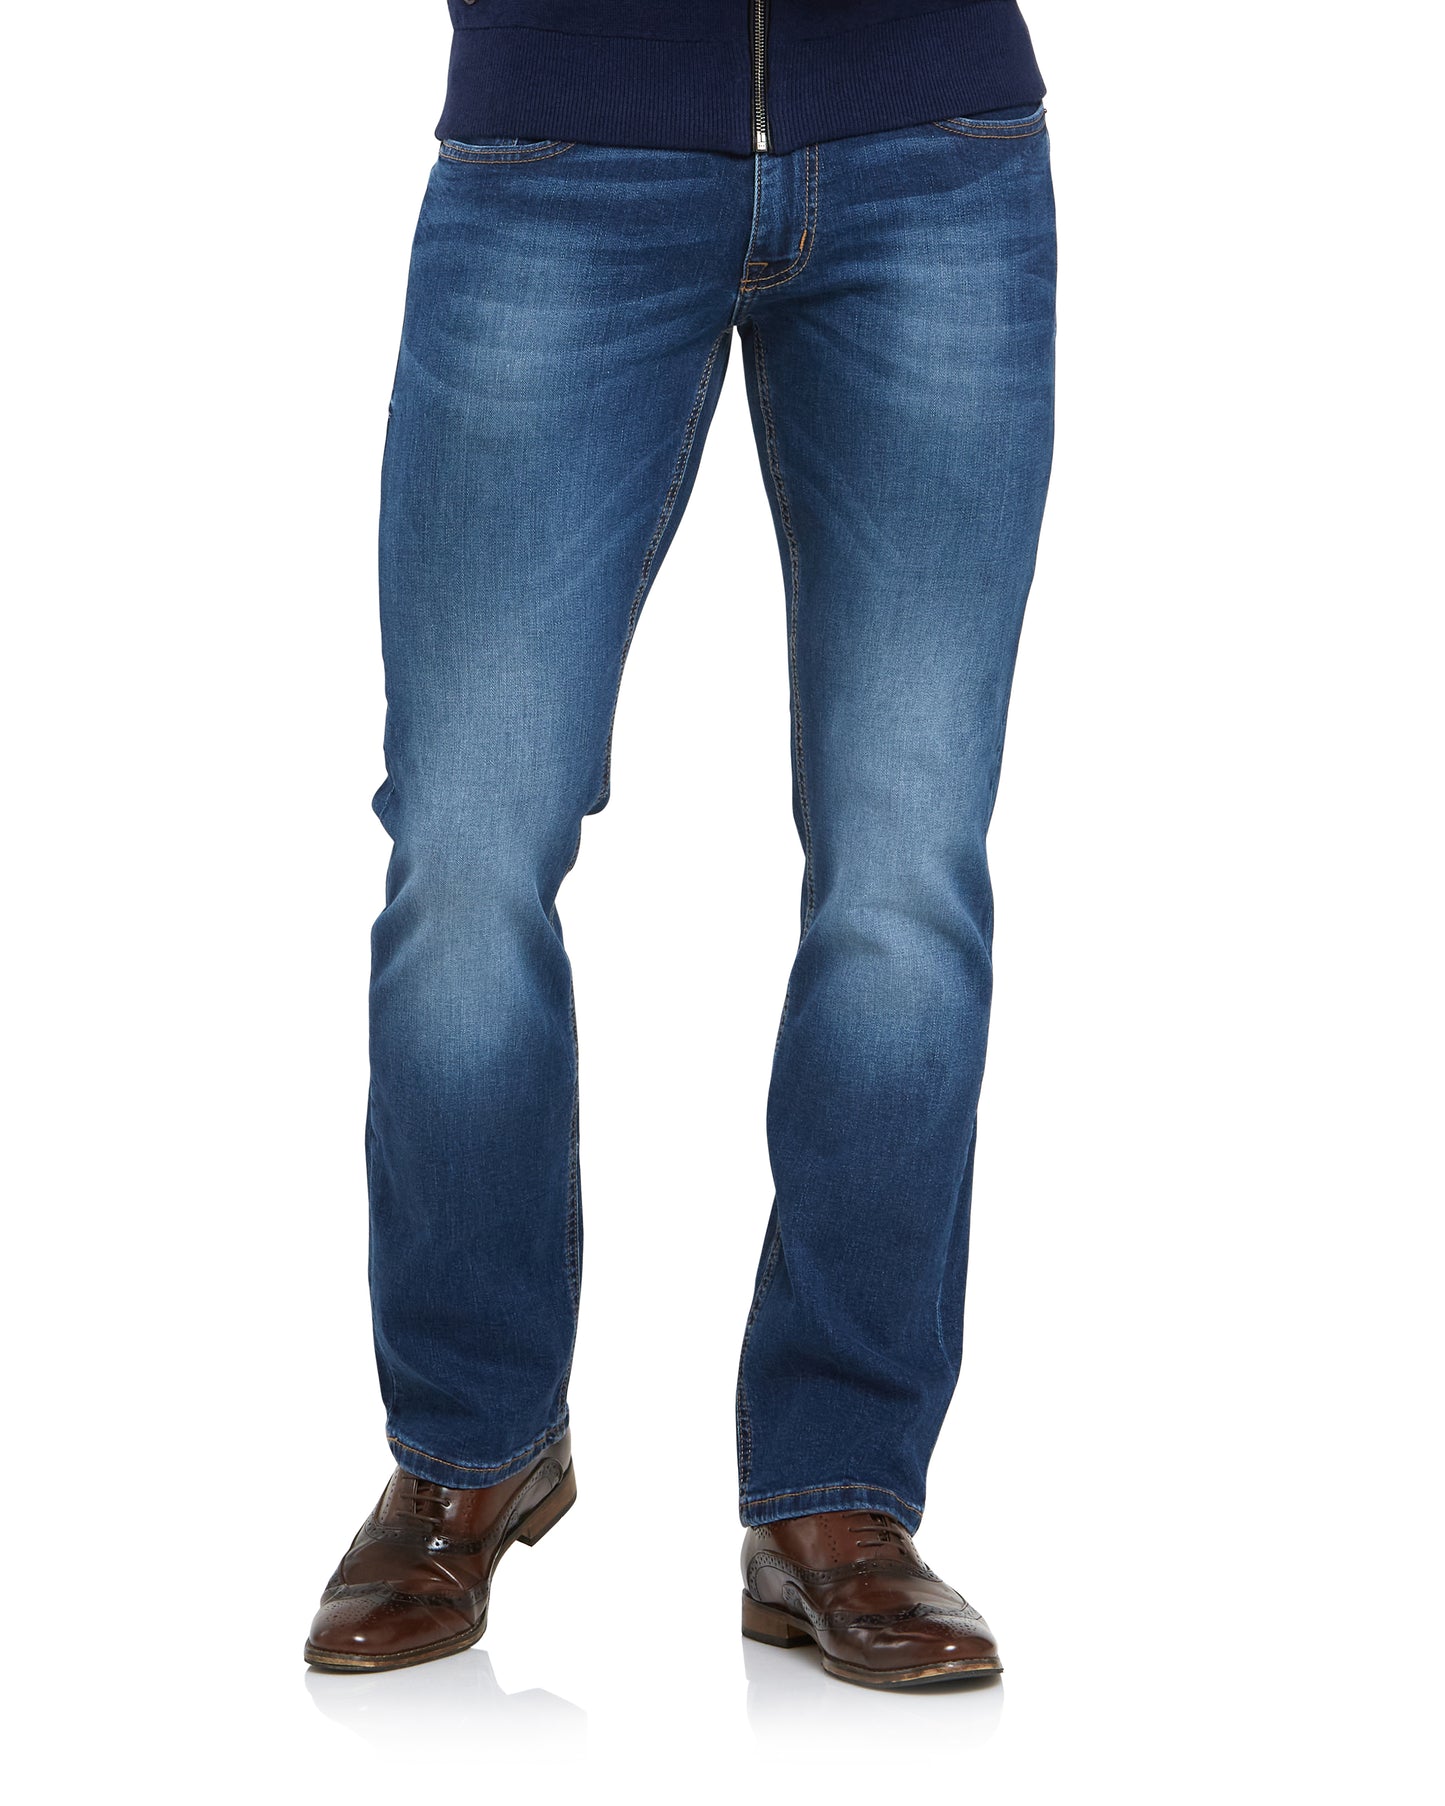 6Th Sense Fred Denim 7 Bootcut Jeans – Wallace